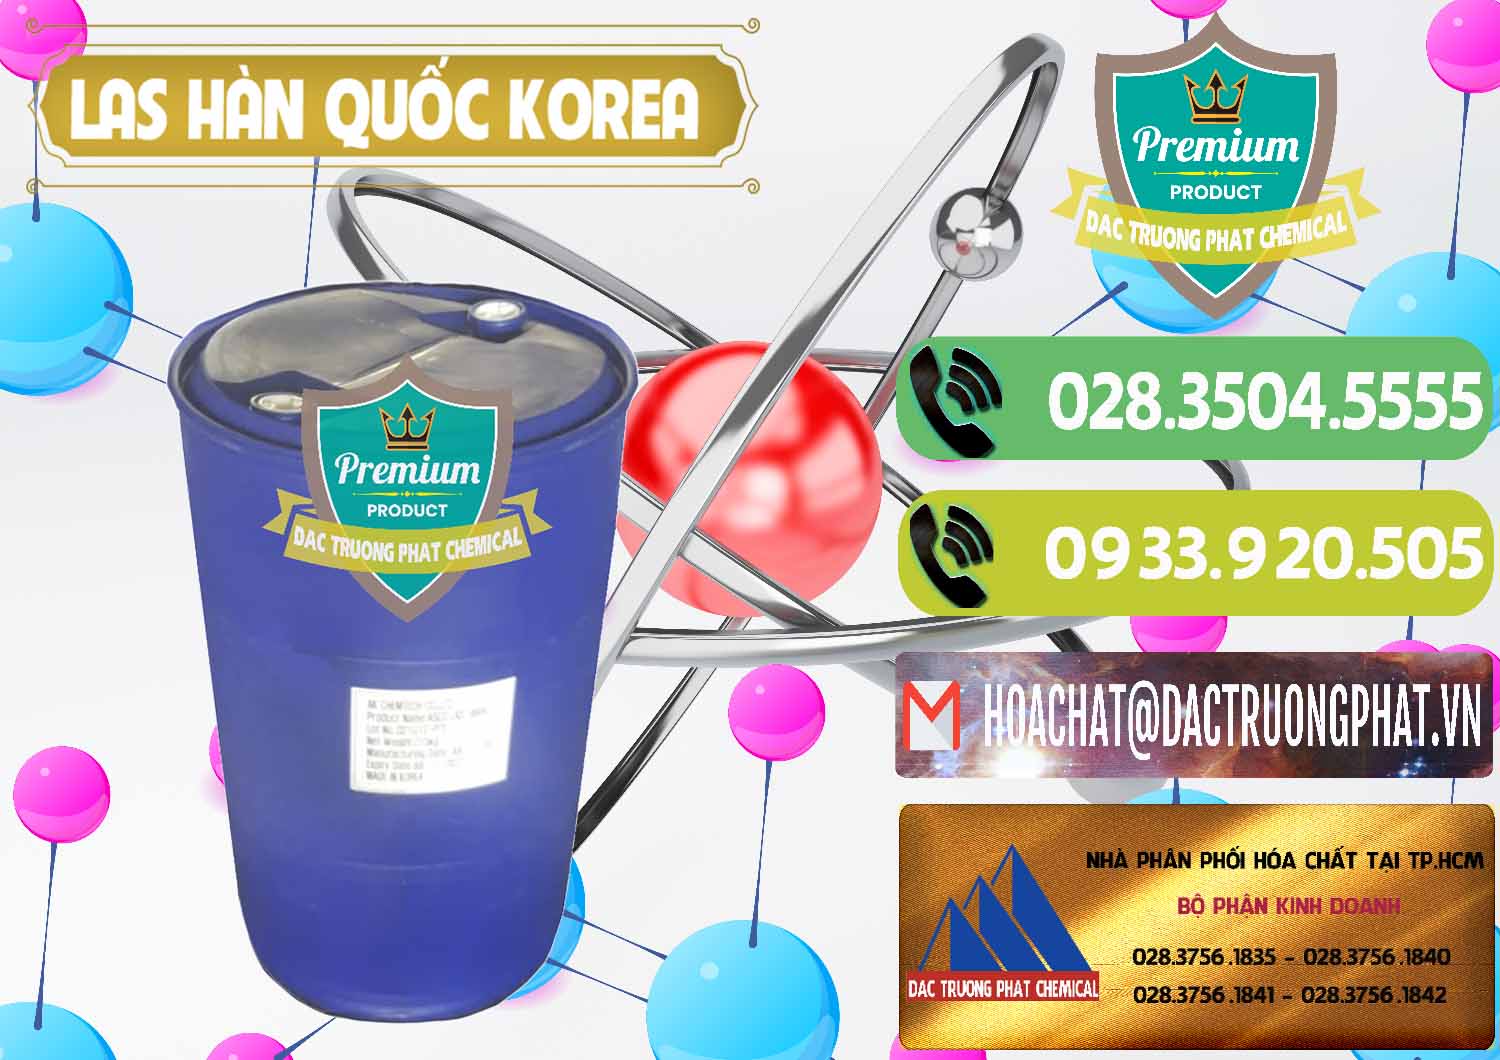 Nơi bán _ cung cấp Chất tạo bọt Las AK Chemtech ASCO Hàn Quốc Korea - 0271 - Nơi cung ứng _ phân phối hóa chất tại TP.HCM - hoachatmientay.vn